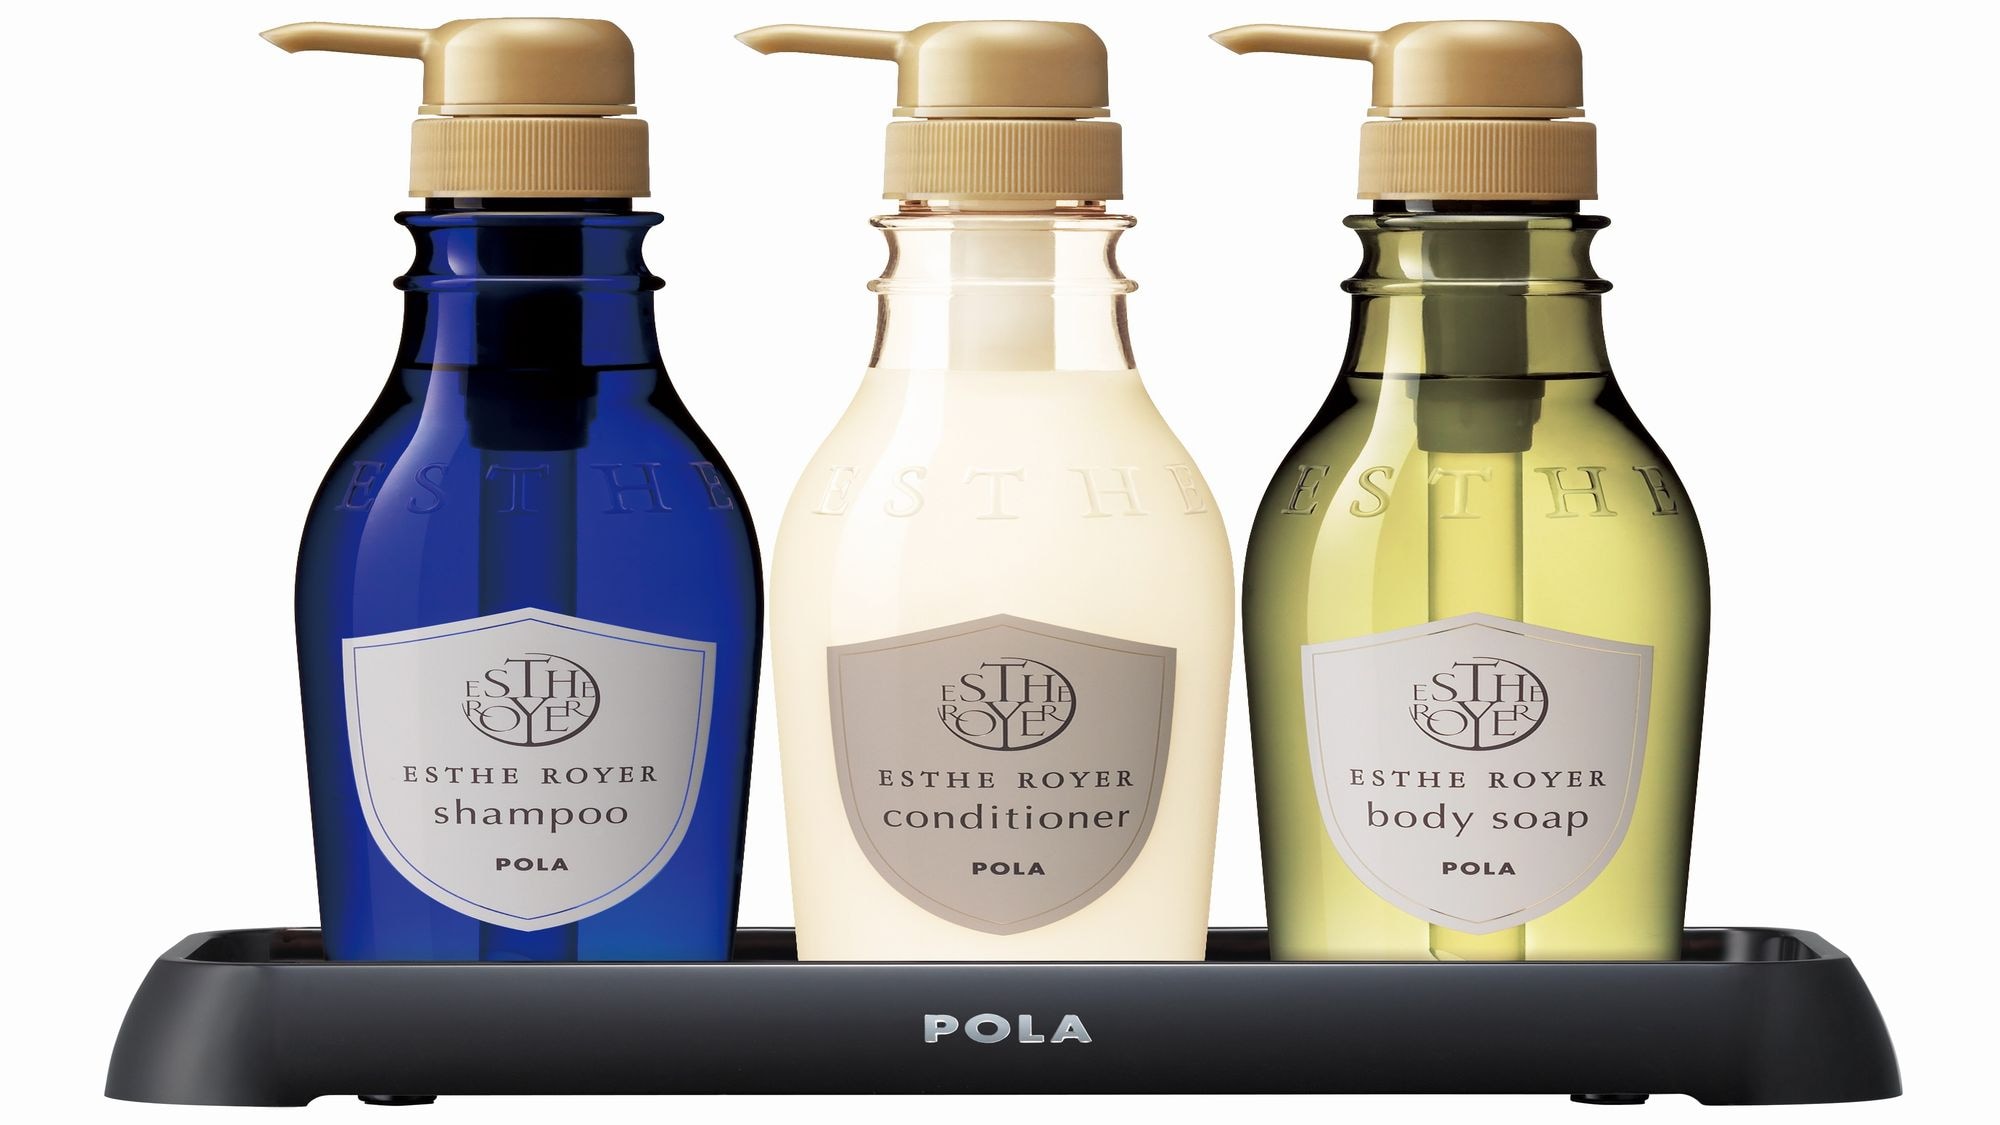 7th floor: POLA "Esteroyer" shampoo, conditioner, body soap